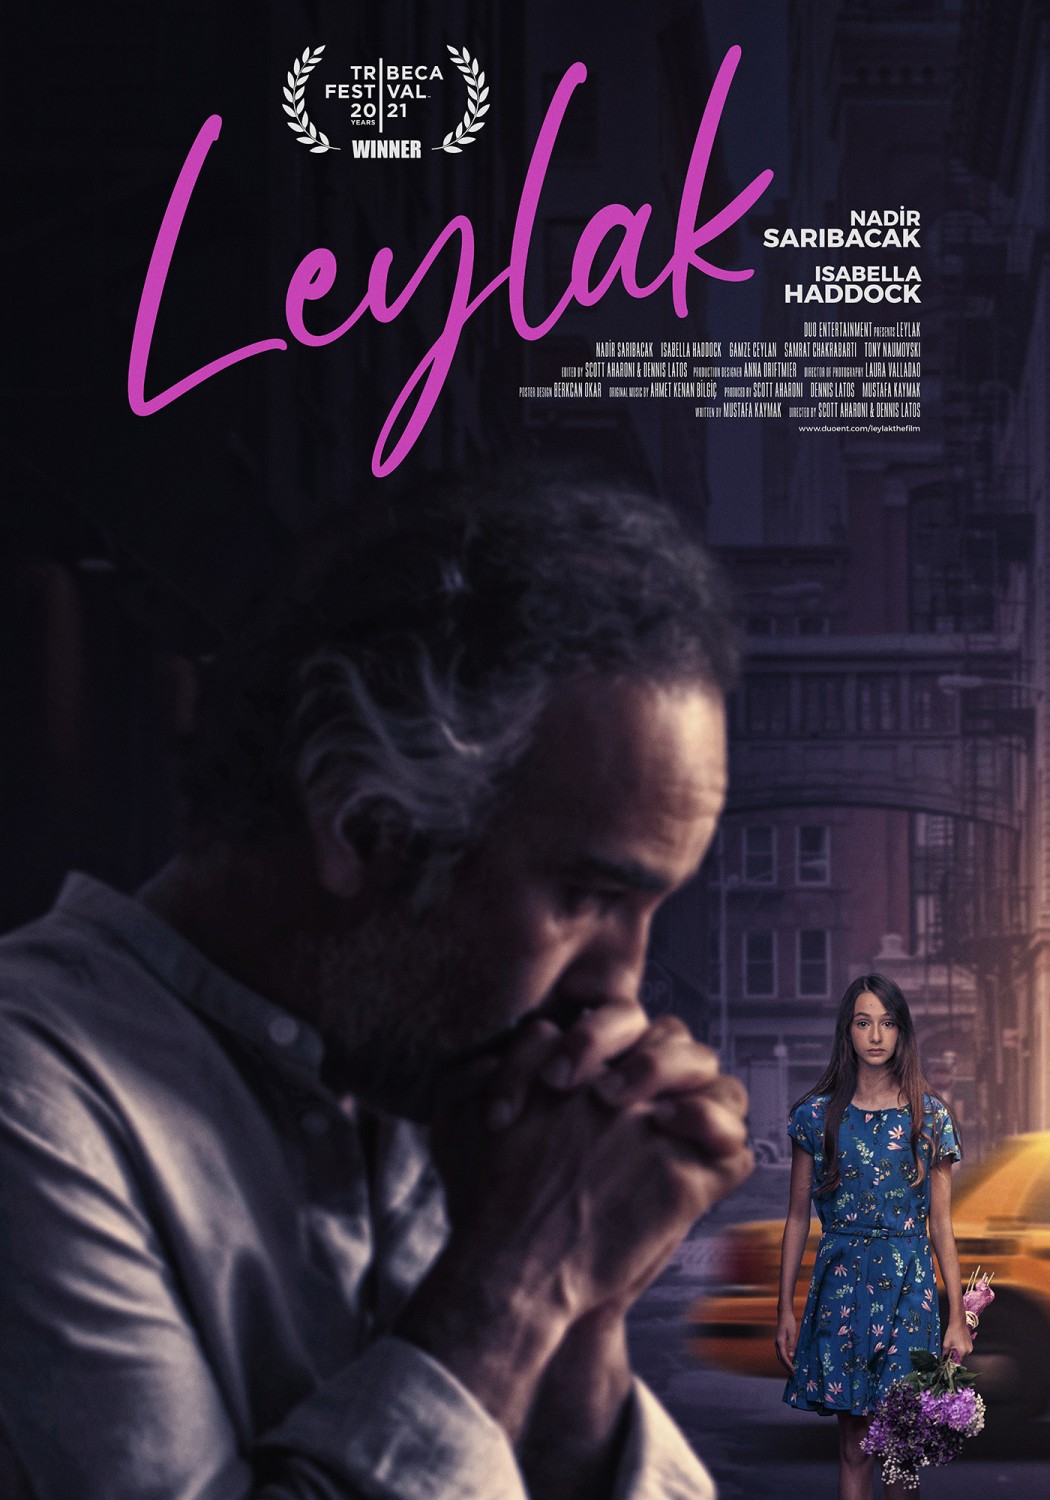 Extra Large Movie Poster Image for Leylak